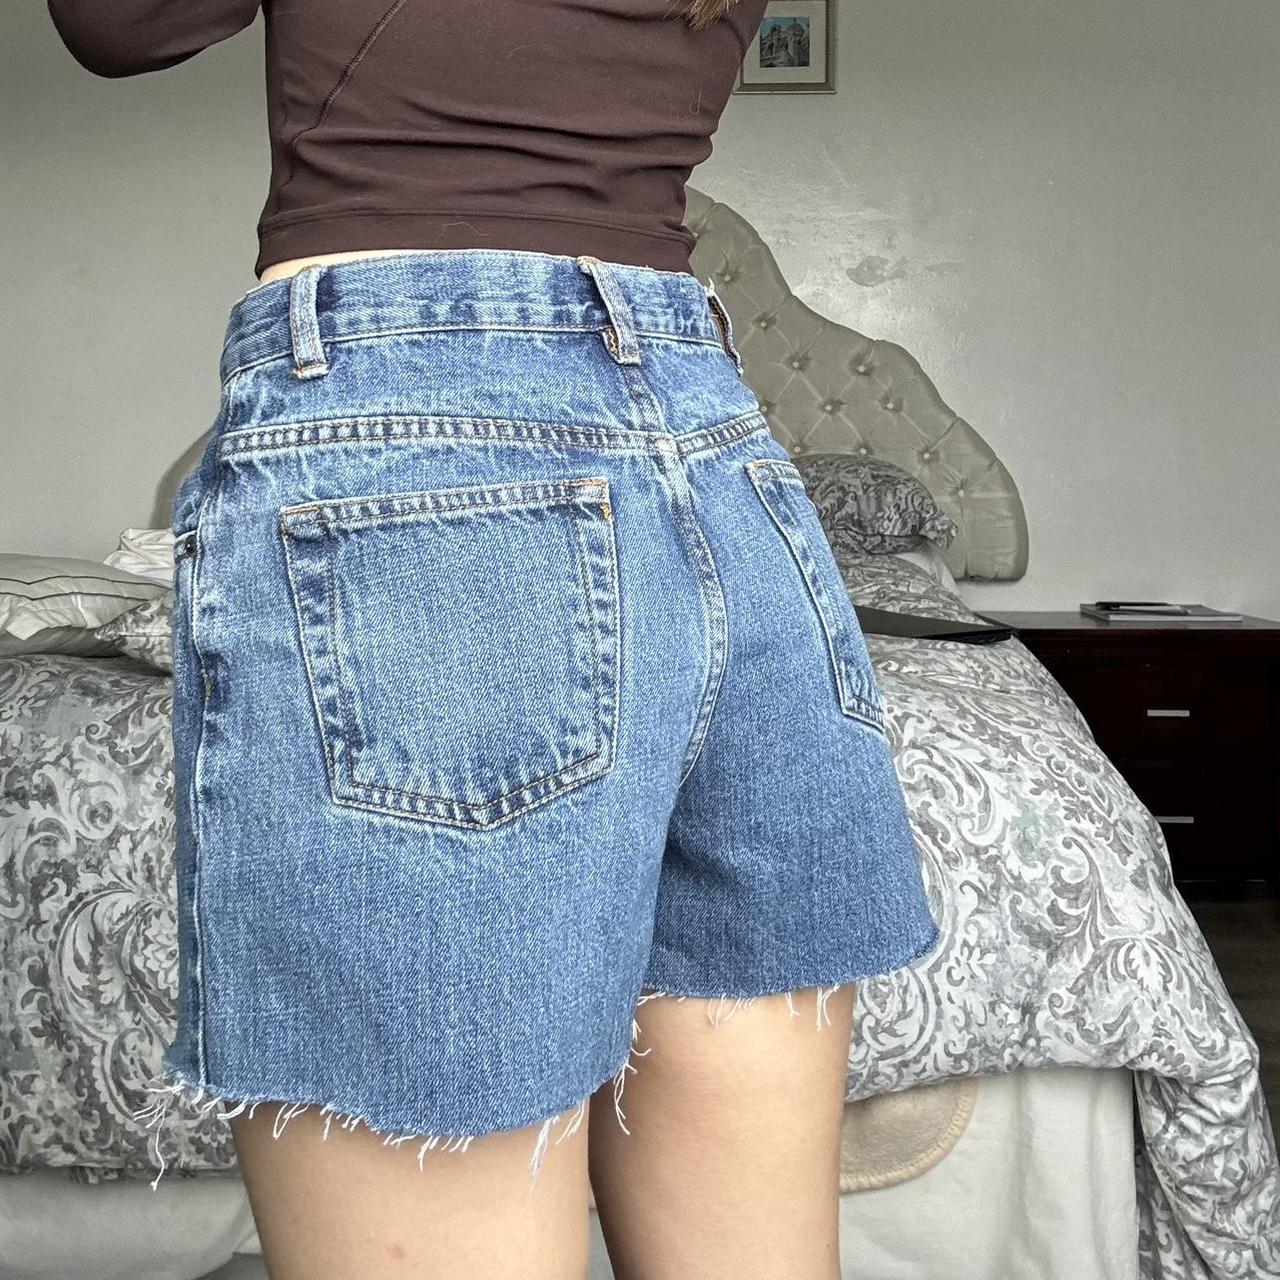 Vintage denim shorts Adjustable waist - Depop